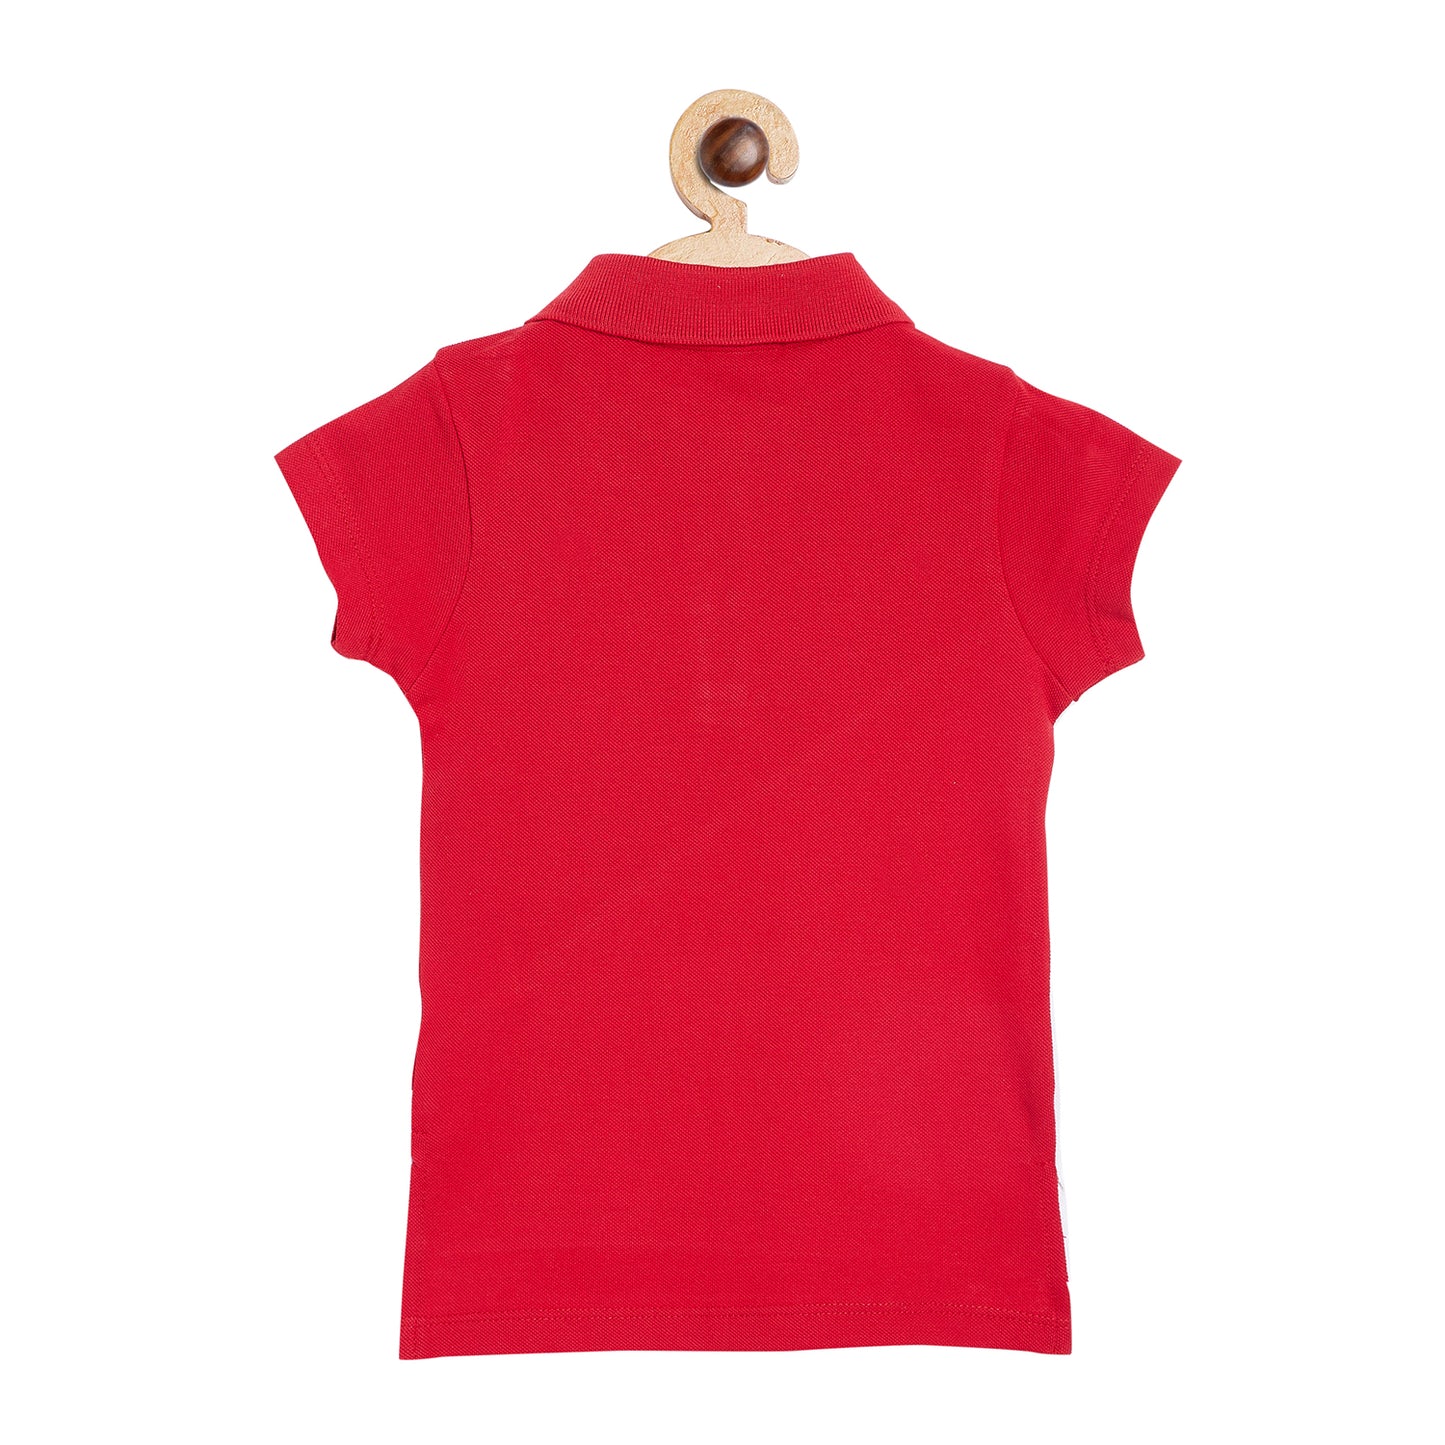 Nins Moda Trend Print Short Sleeves Tee - Red